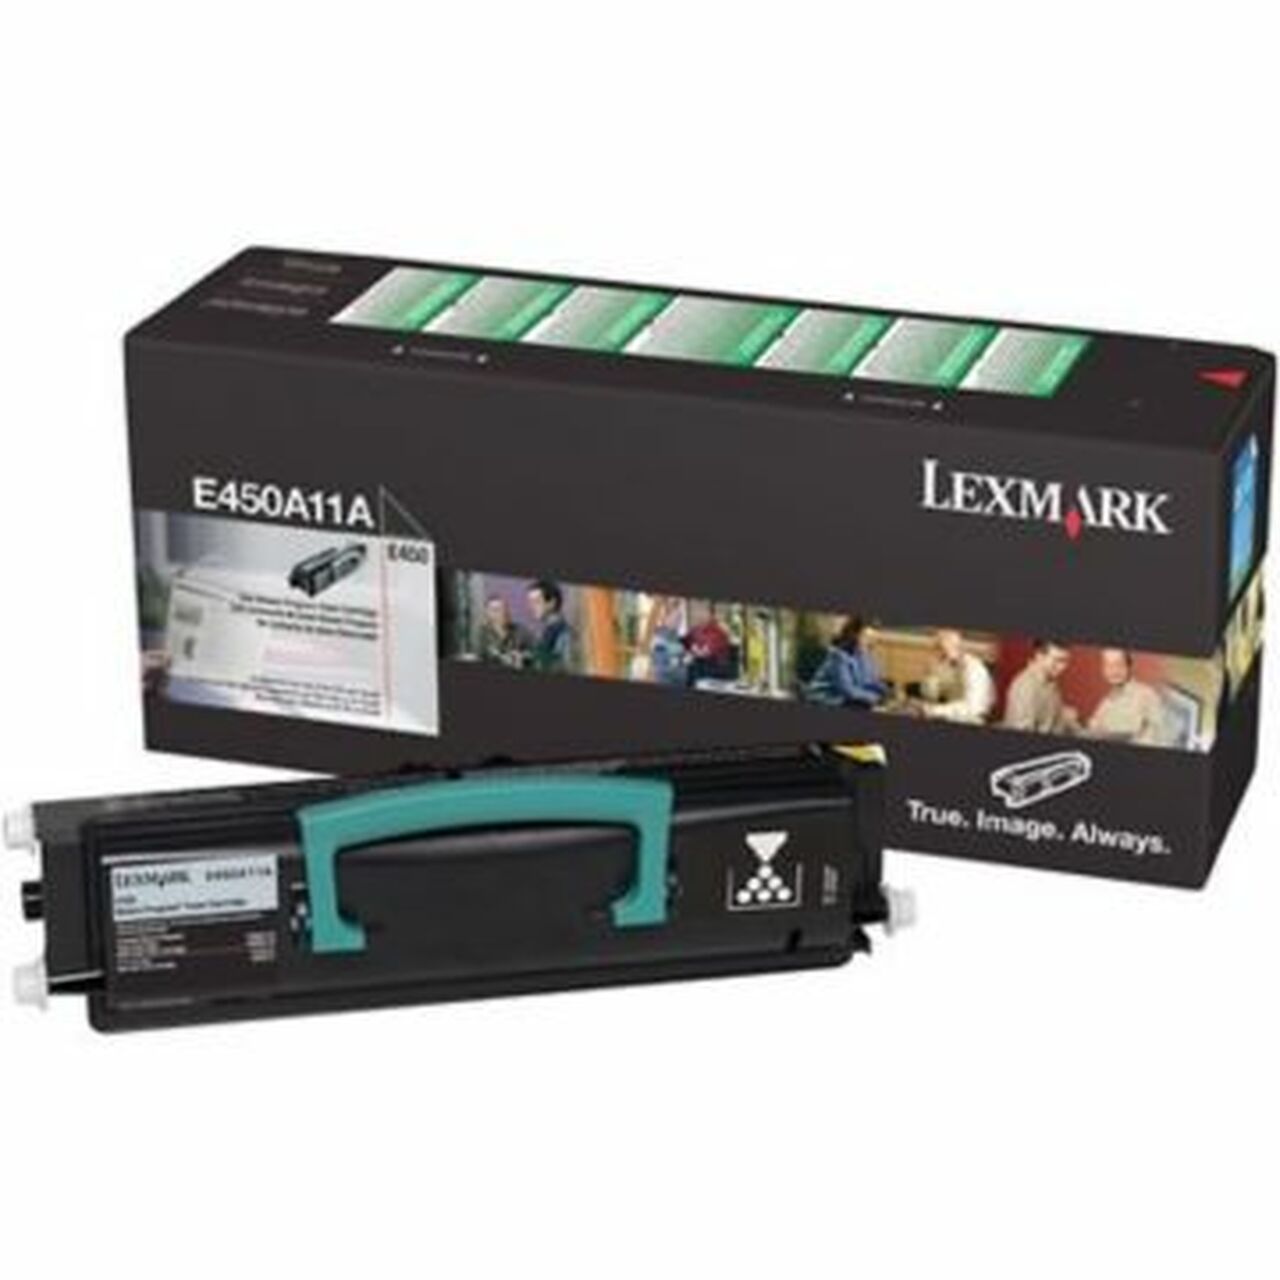 Absolute Toner Lexmark E450A11A Original Genuine OEM Black Toner Cartridge Original Lexmark Cartridges